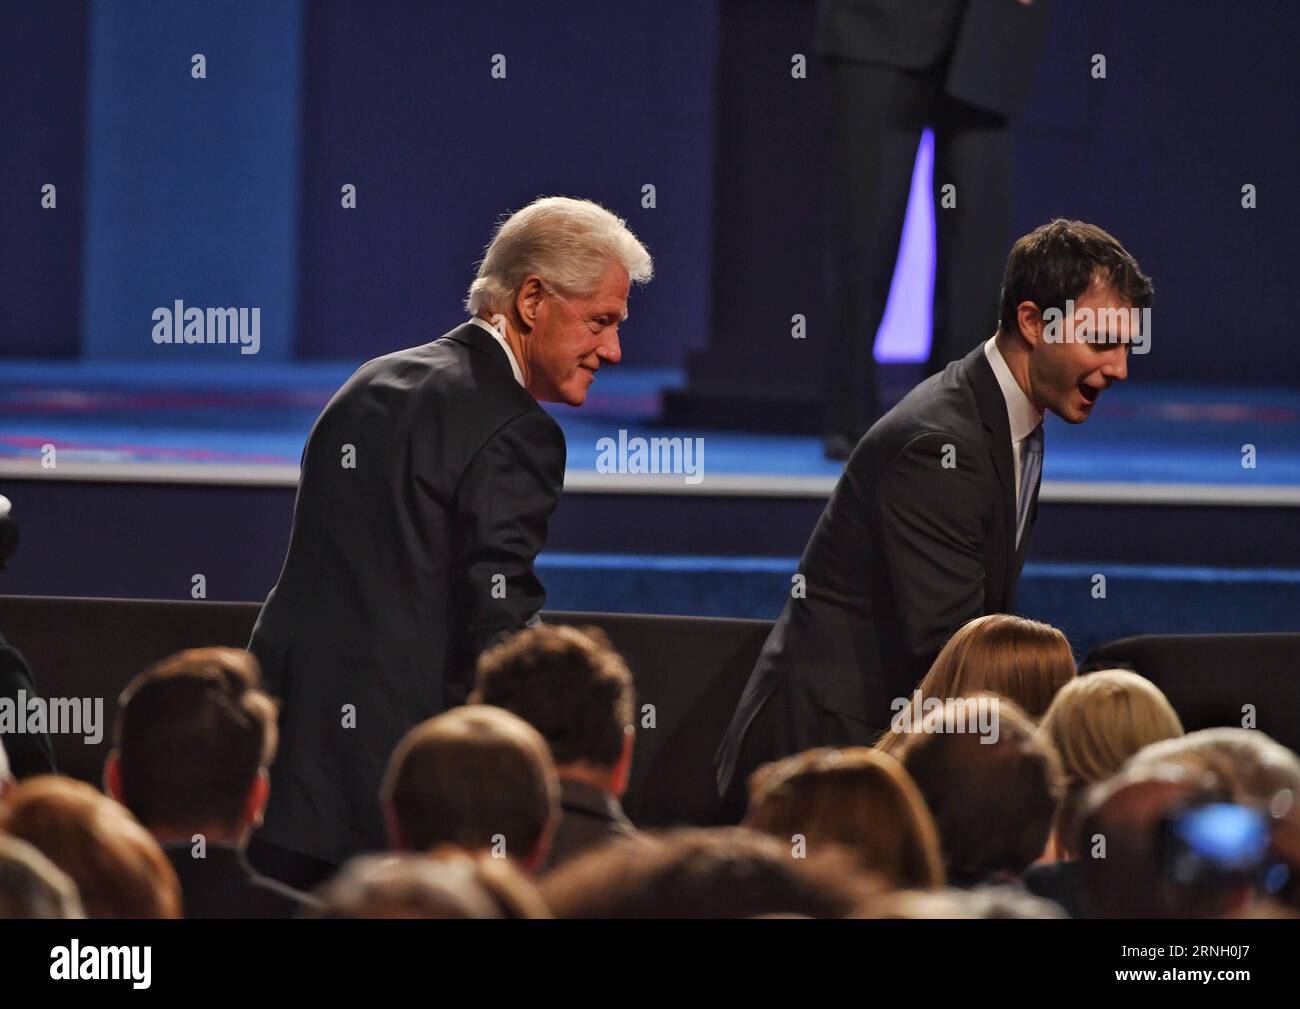 (161020) -- LAS VEGAS, 19 ottobre 2016 -- Bill Clinton(L), ex presidente degli Stati Uniti e marito del candidato presidenziale democratico Hillary Clinton (non visto nella foto) partecipa al terzo e ultimo dibattito presidenziale presso l'Università del Nevada Las Vegas (UNLV) a Las Vegas, Nevada, Stati Uniti, 19 ottobre, 2016.)(gj) DIBATTITO USA-LAS VEGAS-PRESIDENZIALE YinxBogu PUBLICATIONxNOTxINxCHN Las Vegas 19 ottobre 2016 Amministrazione Bill Clinton l ex presidente Degli Stati Uniti e marito del candidato presidenziale democratico Hillary Clinton amministrazione Not Lakes in the Photo partecipa alla terza e ultima presidenza Foto Stock